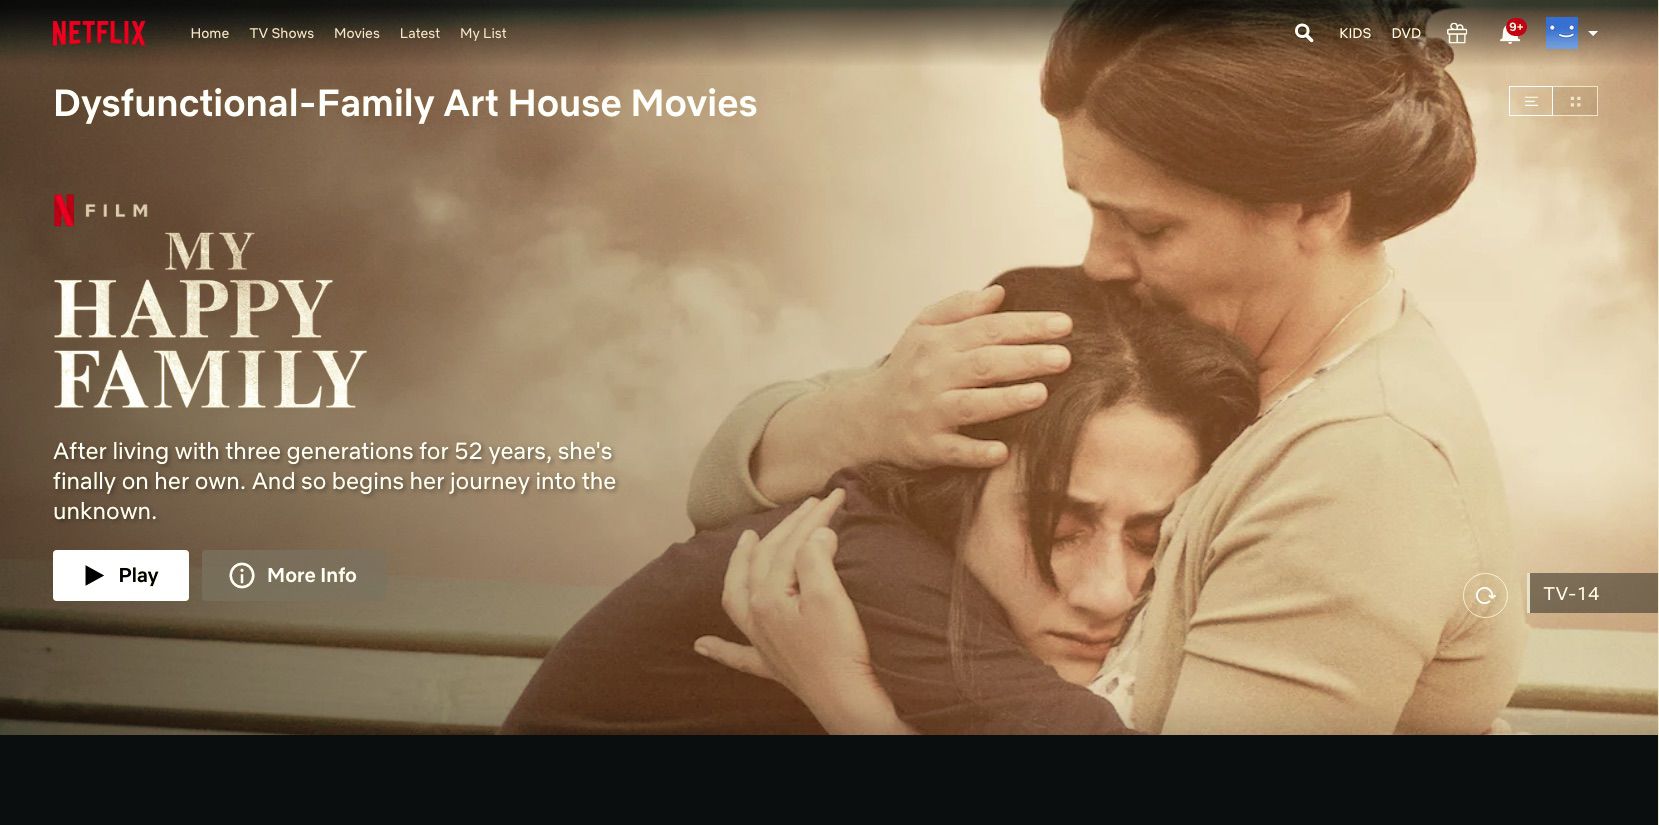 Filme My Happy Family na Netflix categoria oculta Disfunctional Family Art House Movies